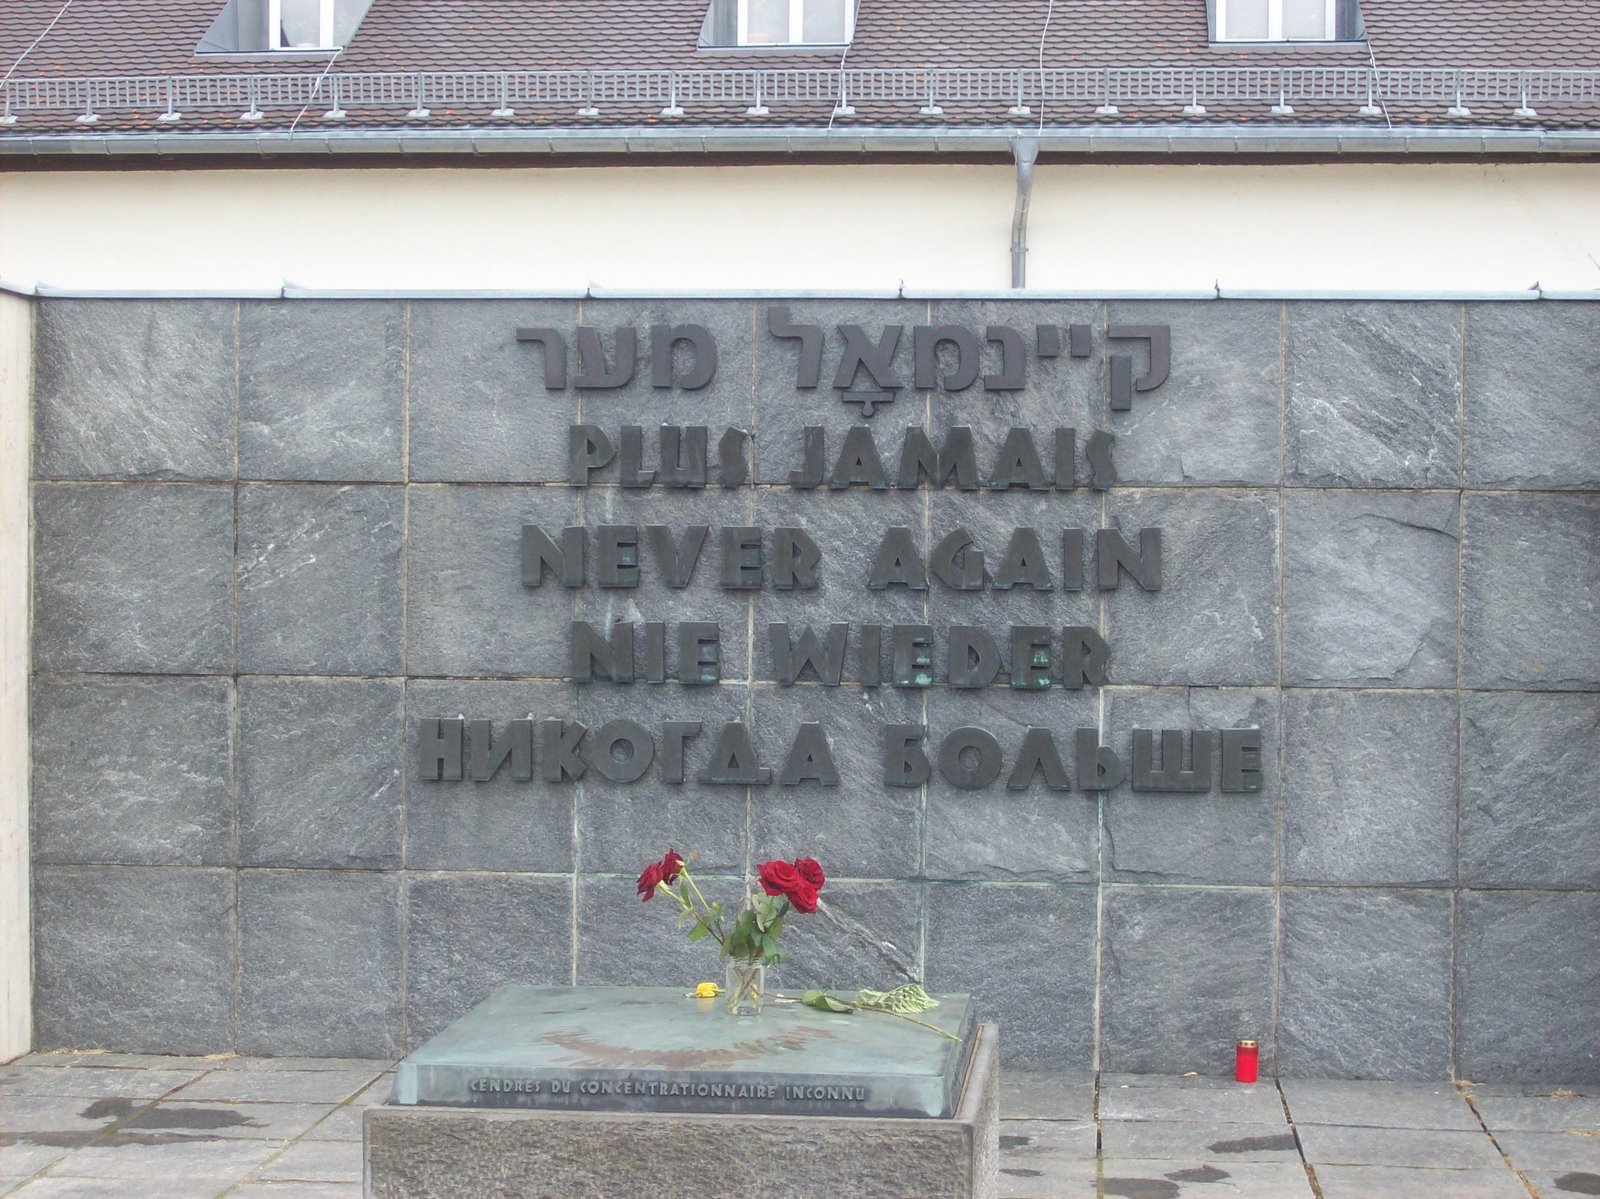 [Dachau,+Munique,+Saltburg+e+Neuschwanstein+034.JPG]